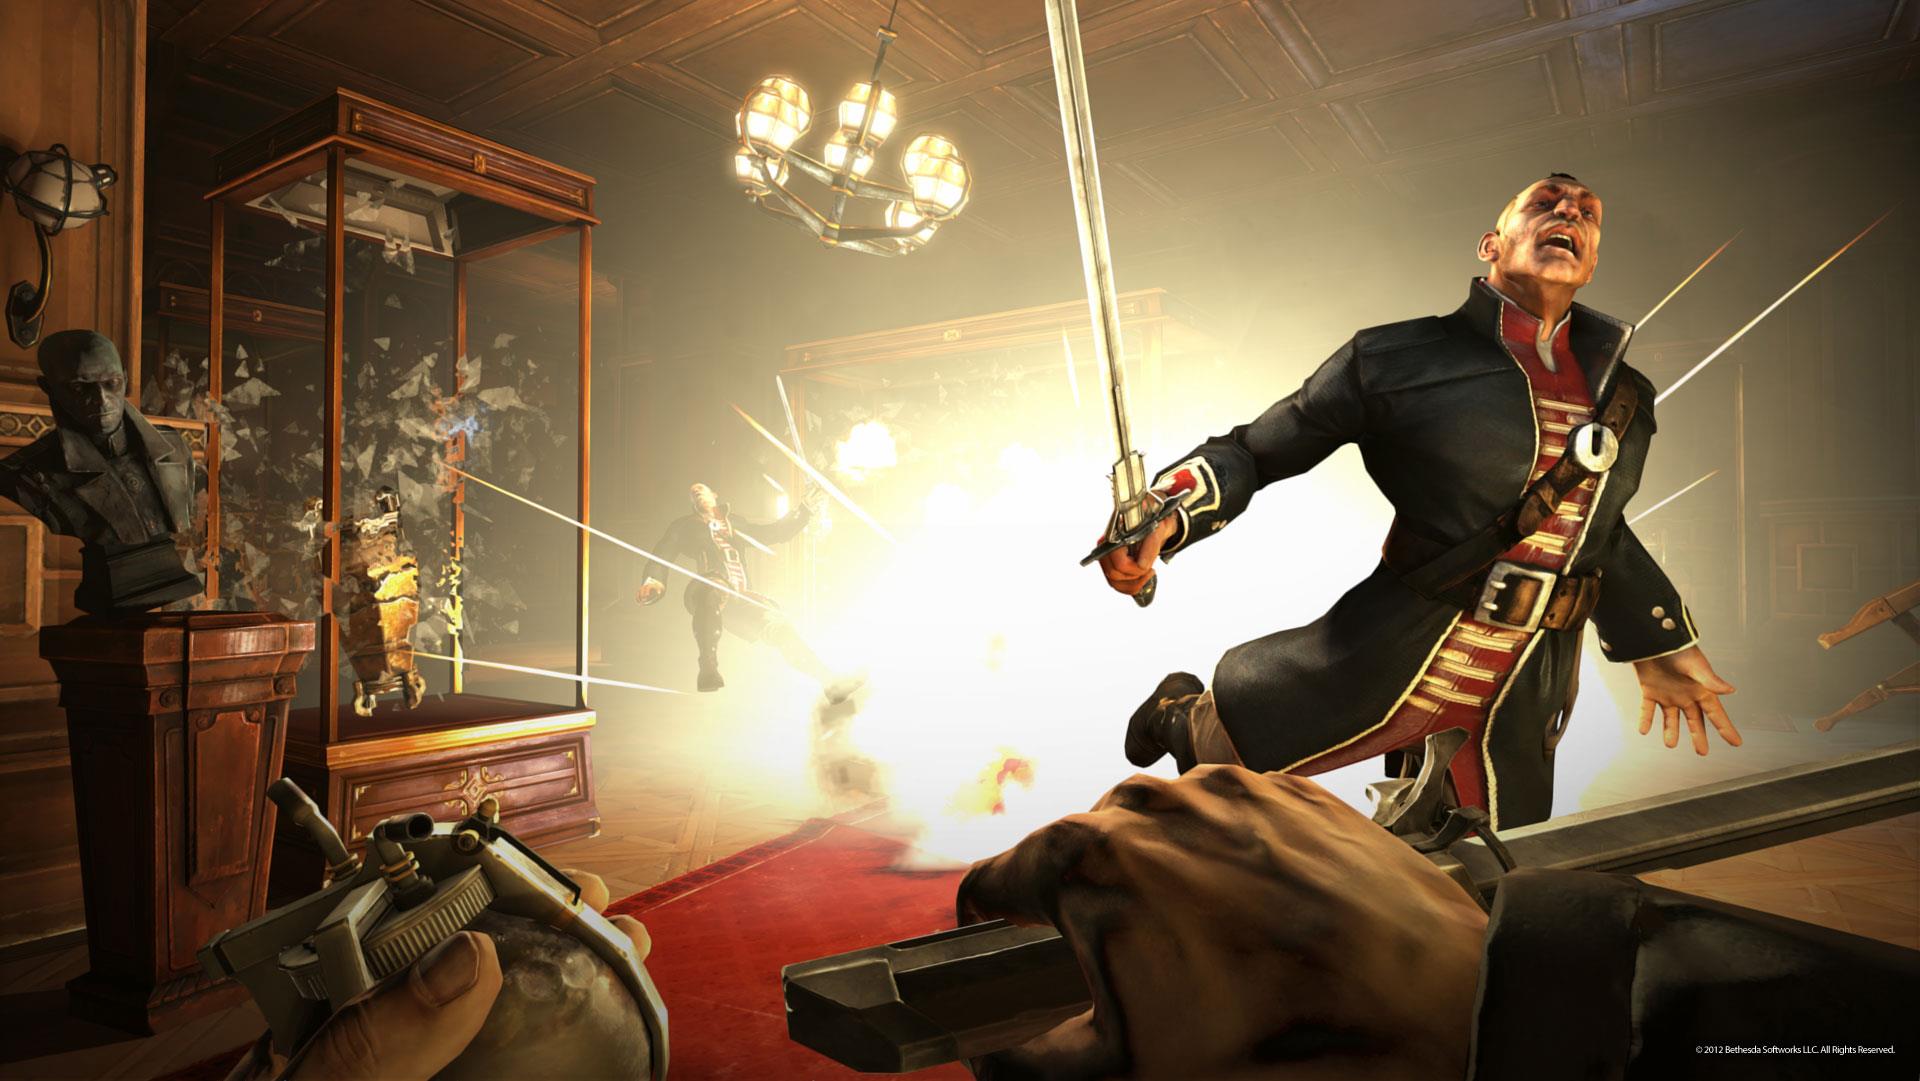 Immagine pubblicata in relazione al seguente contenuto: Arkane Studios mostra nuovi screenshot del game Dishonored | Nome immagine: news17137_5.jpg